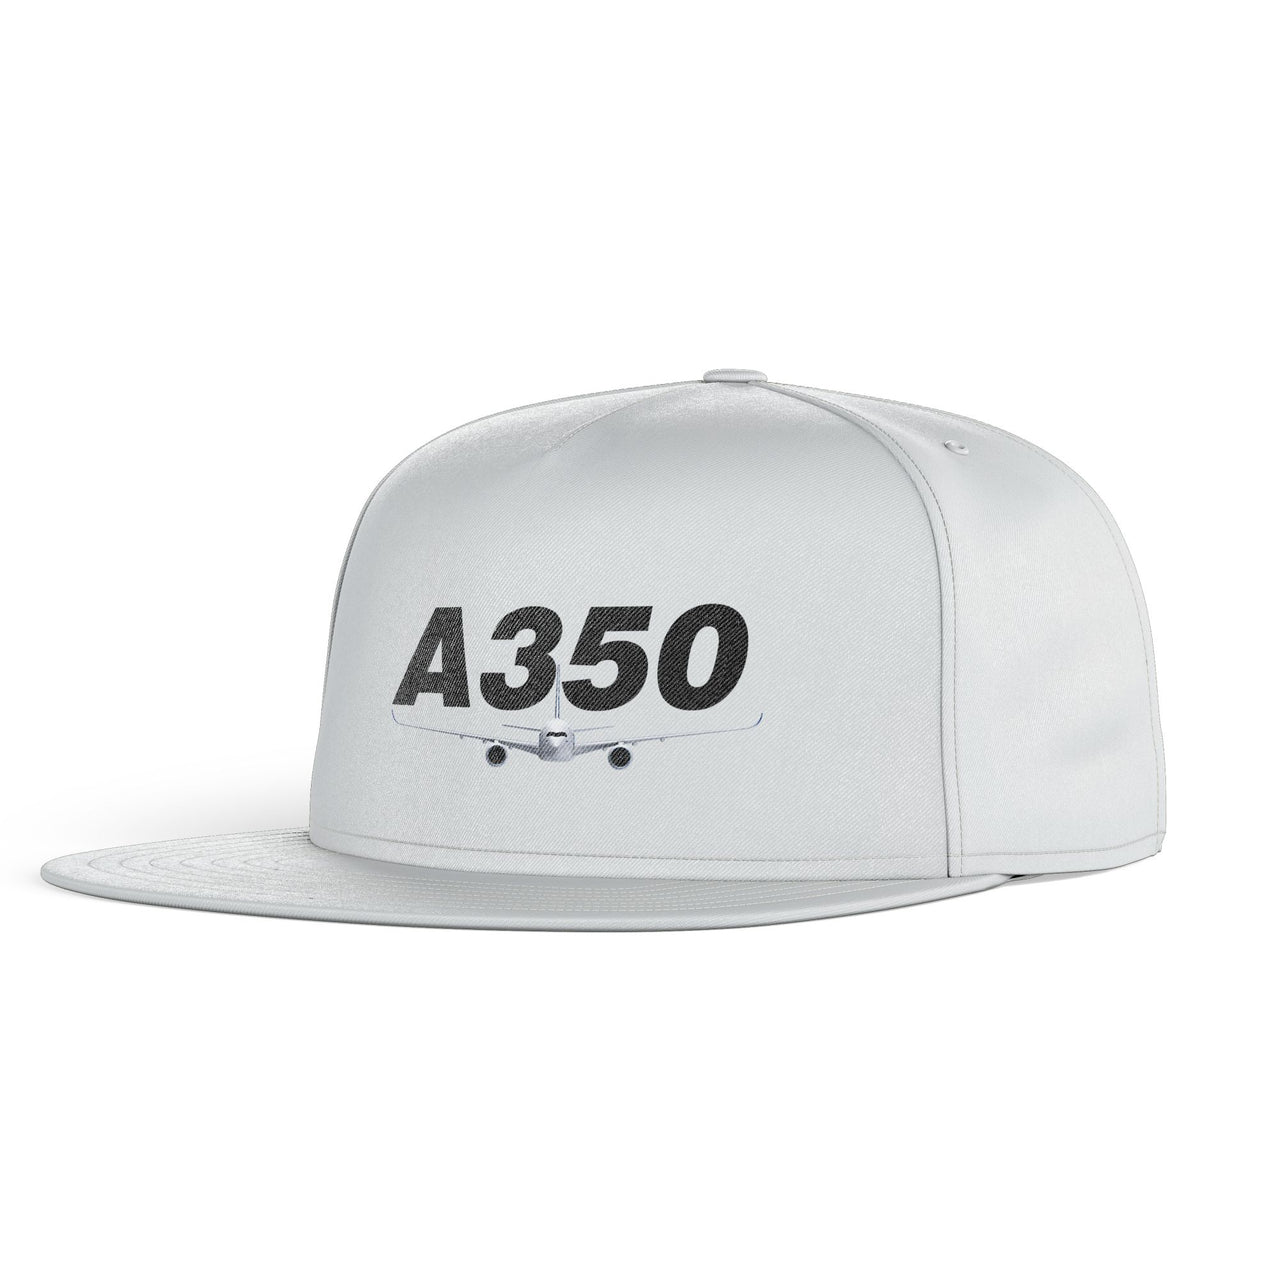 Super Airbus A350 Designed Snapback Caps & Hats